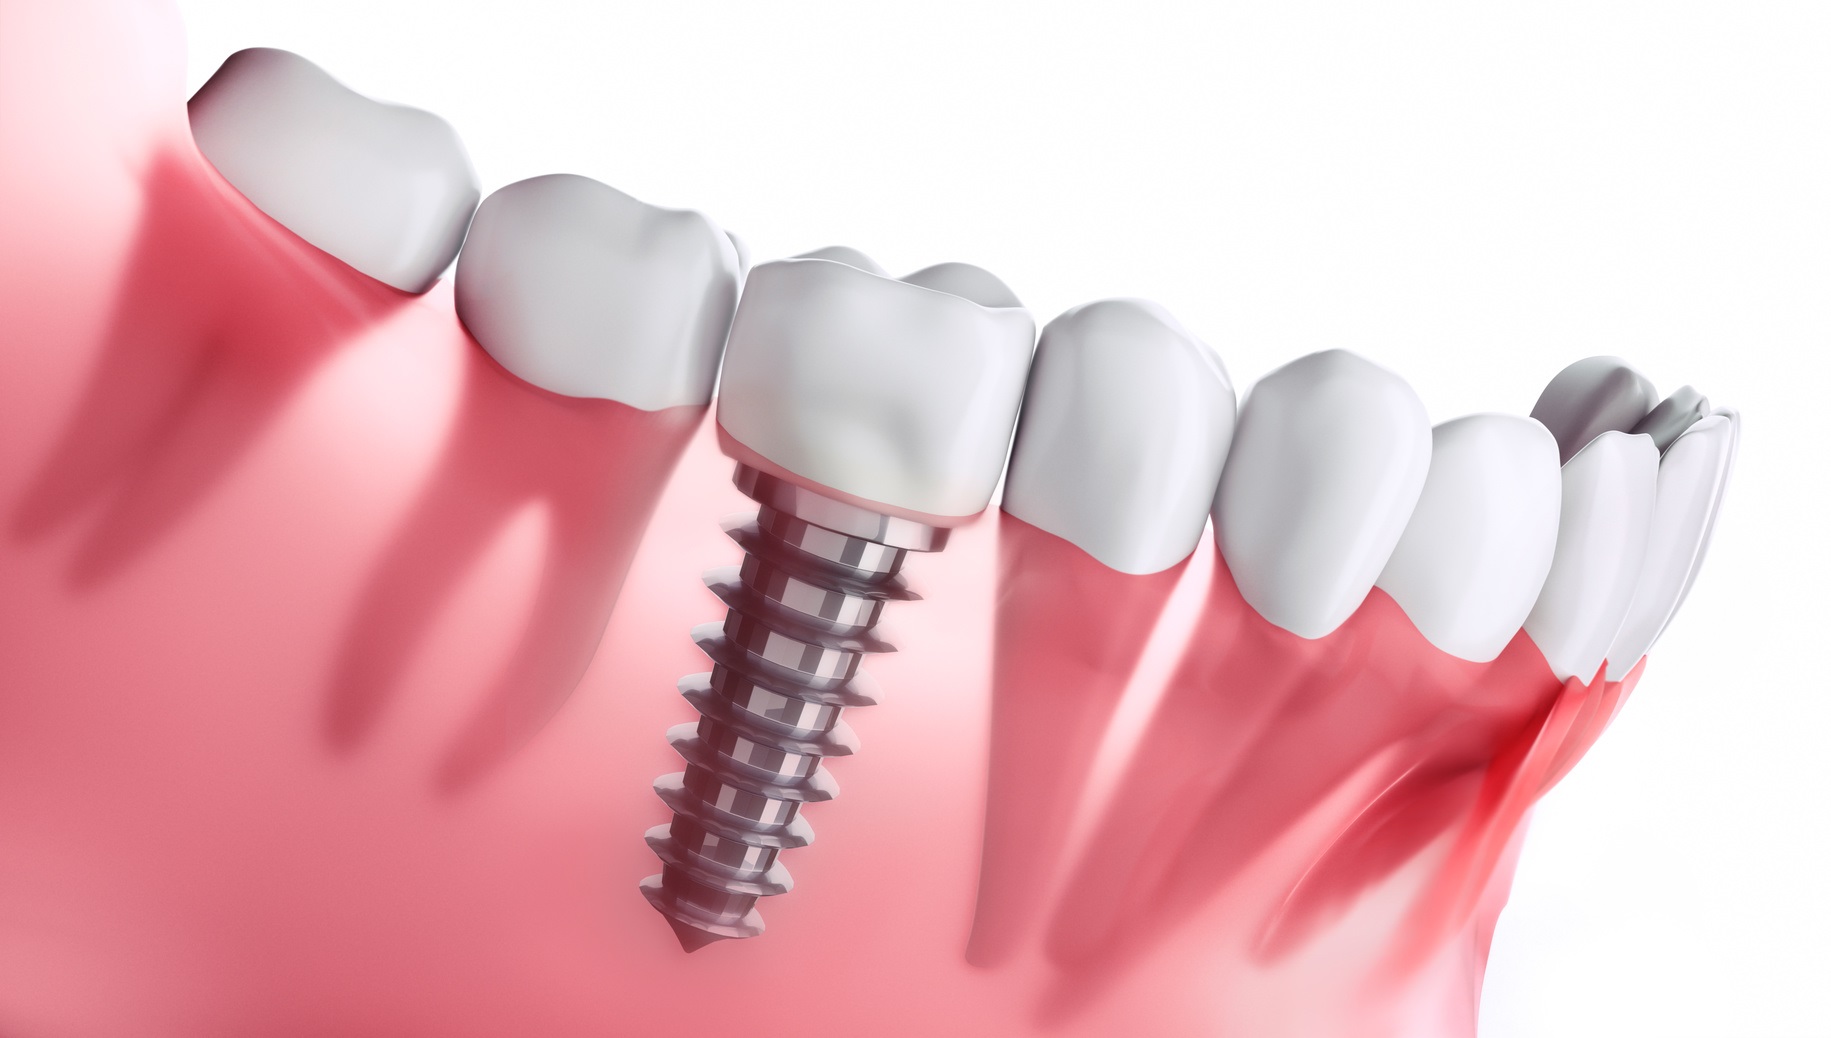 L’implant dentaire comprend une vis biocompatible pour fixer la couronne dans la gencive. © peterschreiber.media, Fotolia